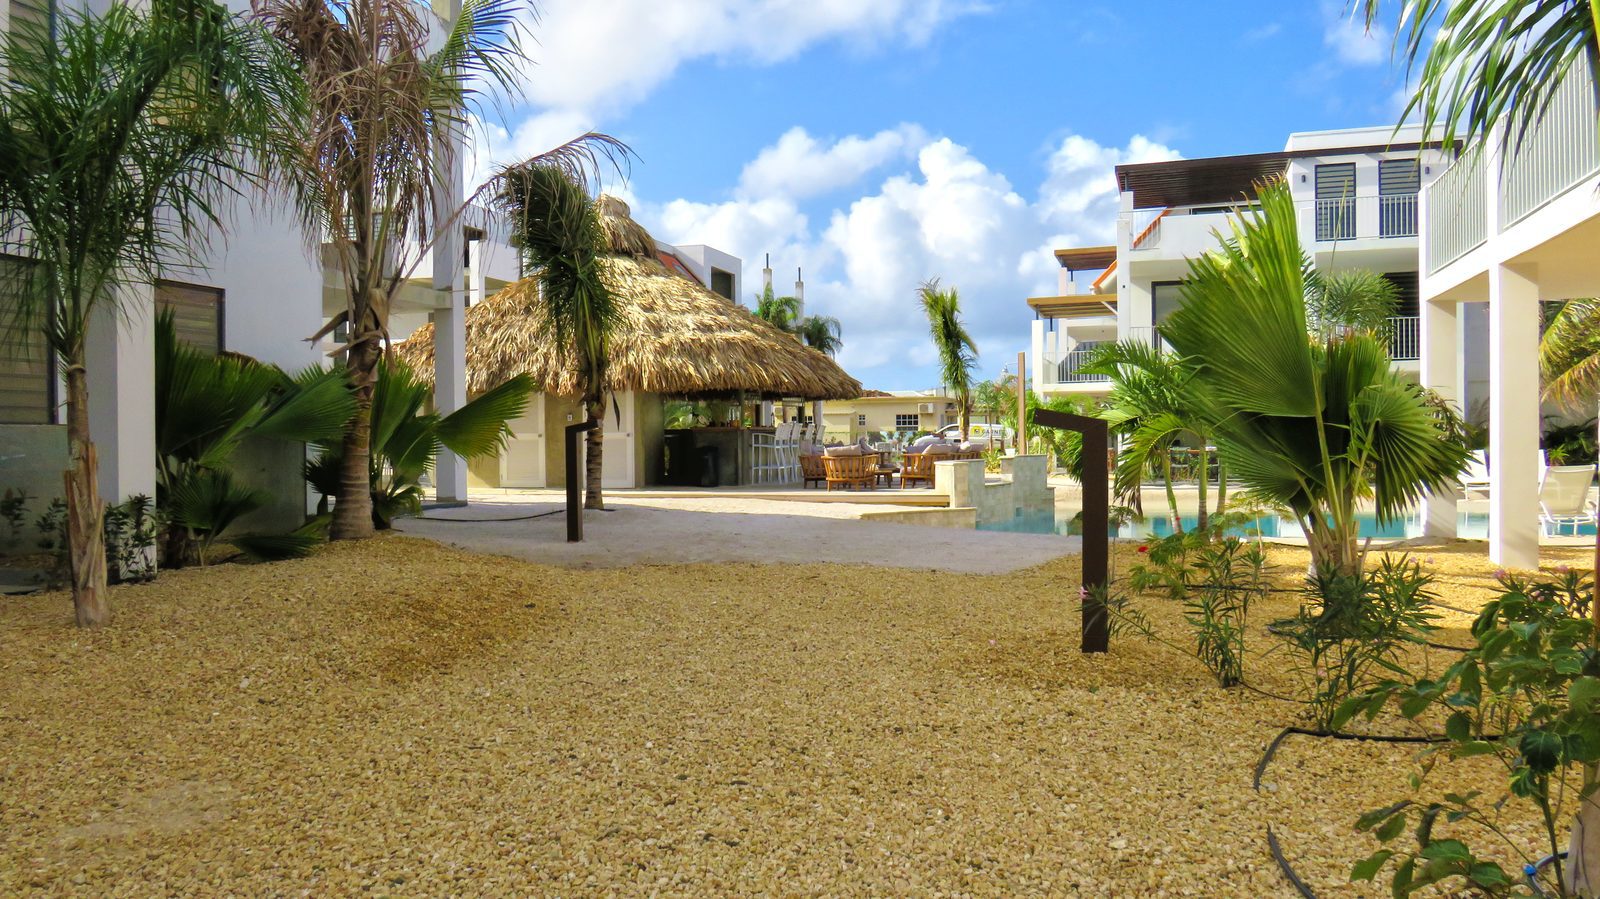 Resort Bonaire est l’une des nombreuses stations balnéaires de cette île magnifique. Jetez donc un coup d'œil aux photos de nos installations et des possibilités offertes sur l'île.